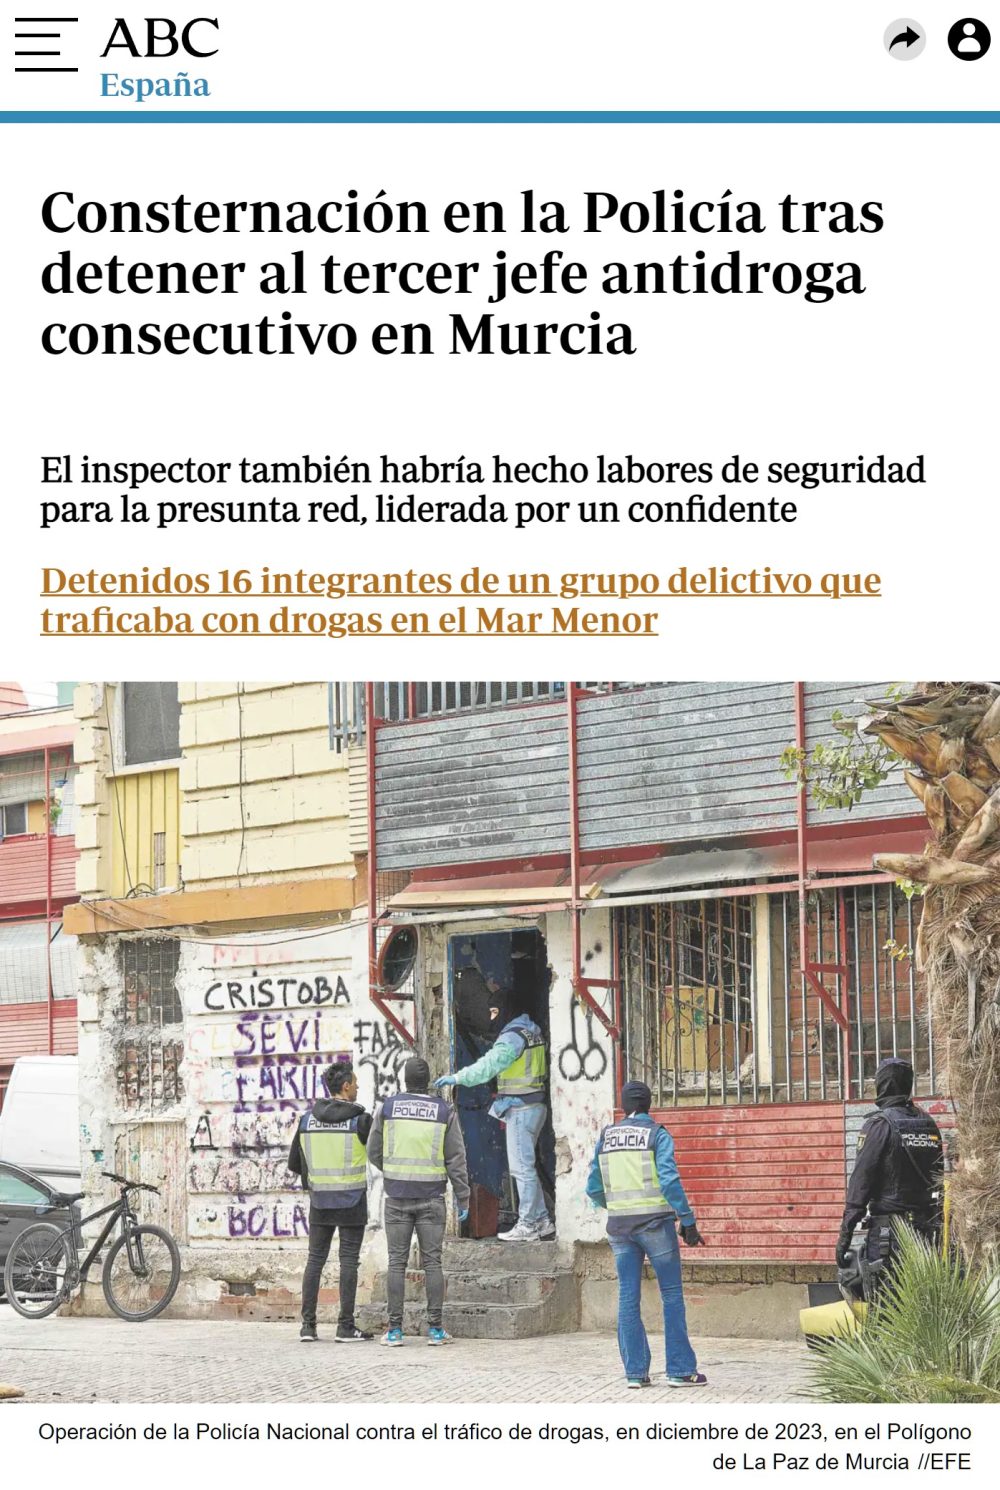 Ya van 3 jefes antidrоga detenidos en Murcia...